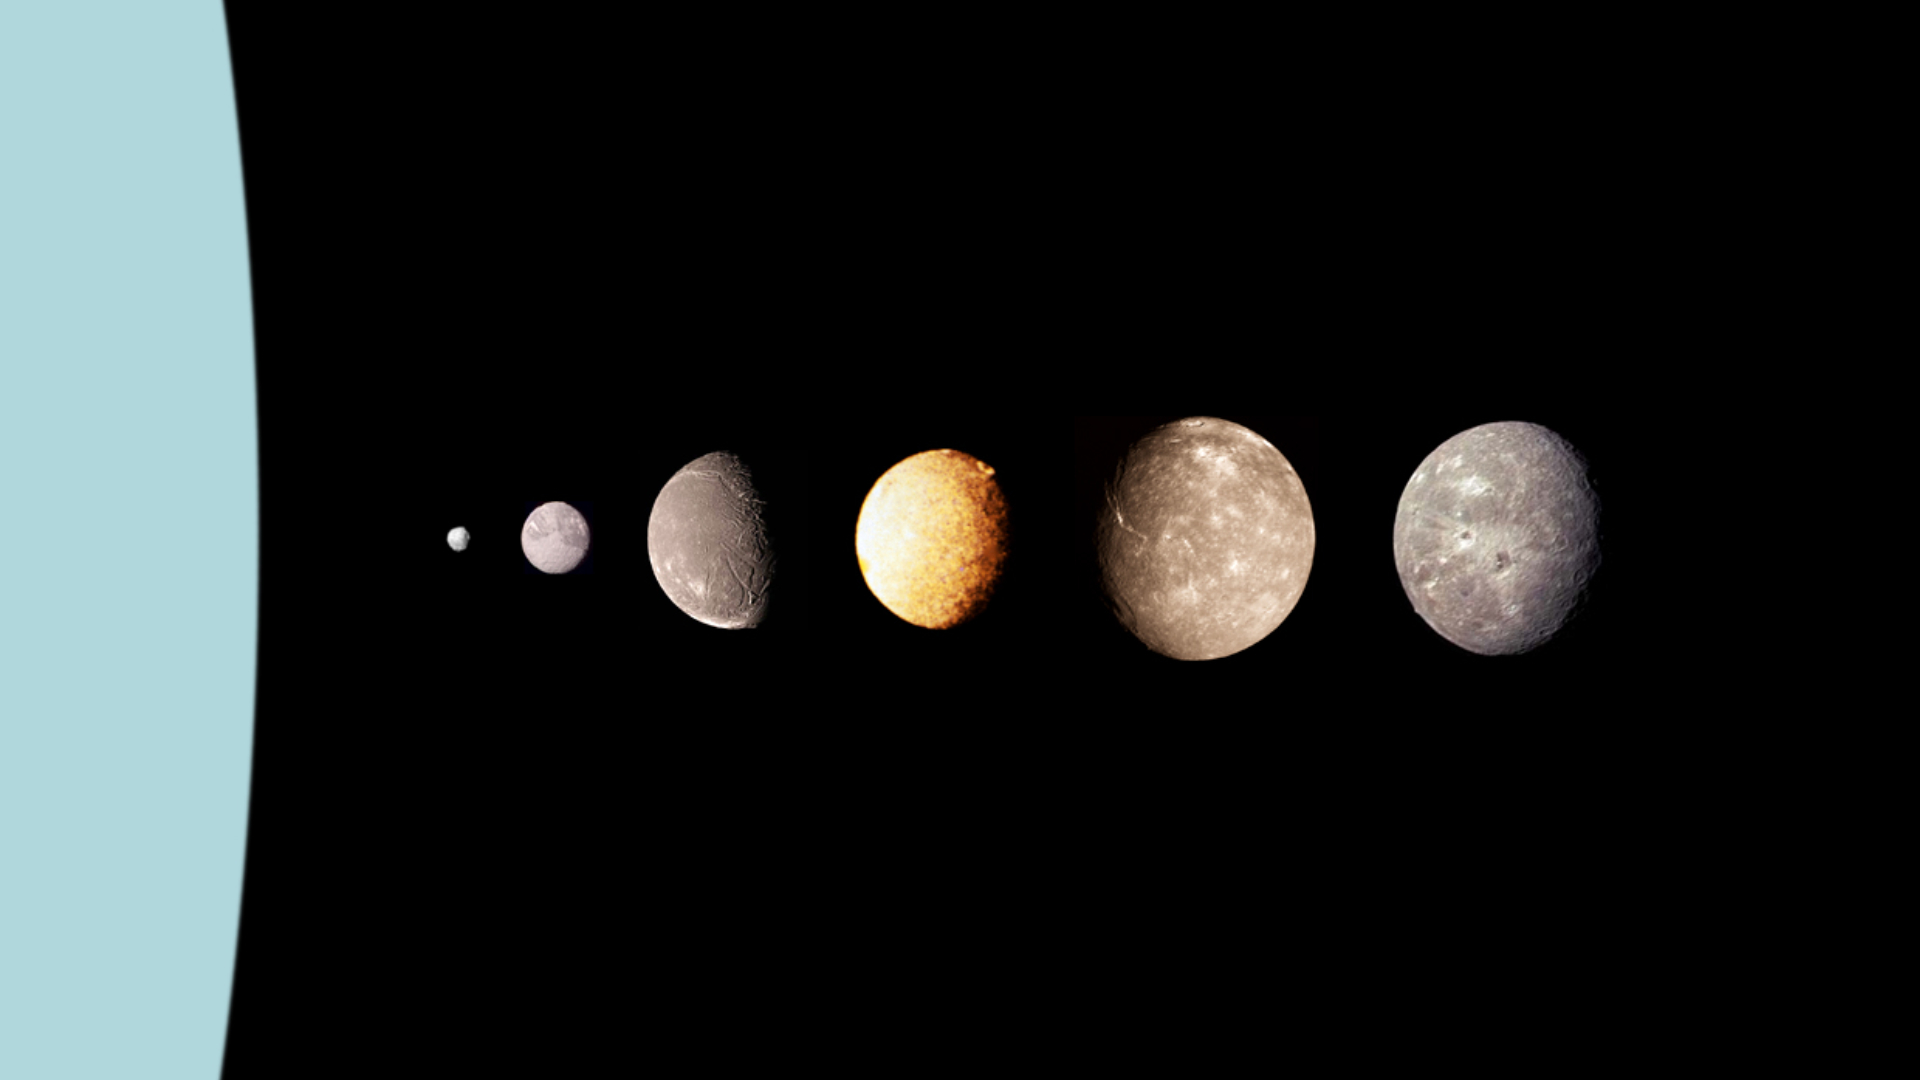 Les 5 principales lunes d'Uranus ressemblent étonnamment à Pluton